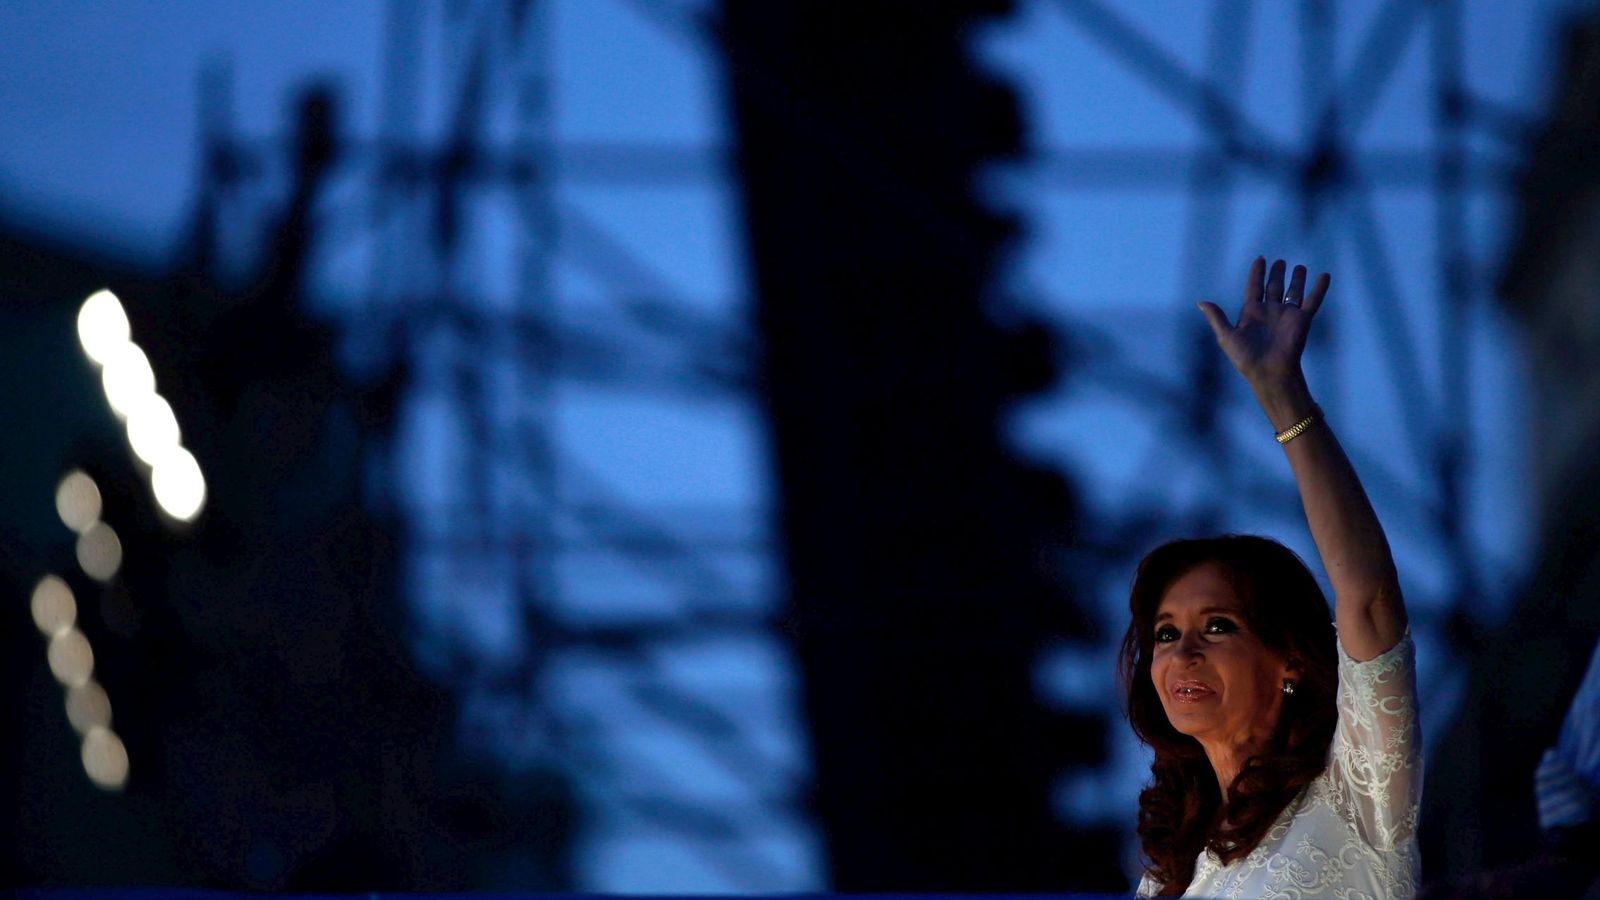 Foto: La expresidenta Cristina Fernández de Kirchner saluda a simpatizantes durante una ceremonia en su último día en la Casa Rosada, el 9 de diciembre de 2015. (Reuters)